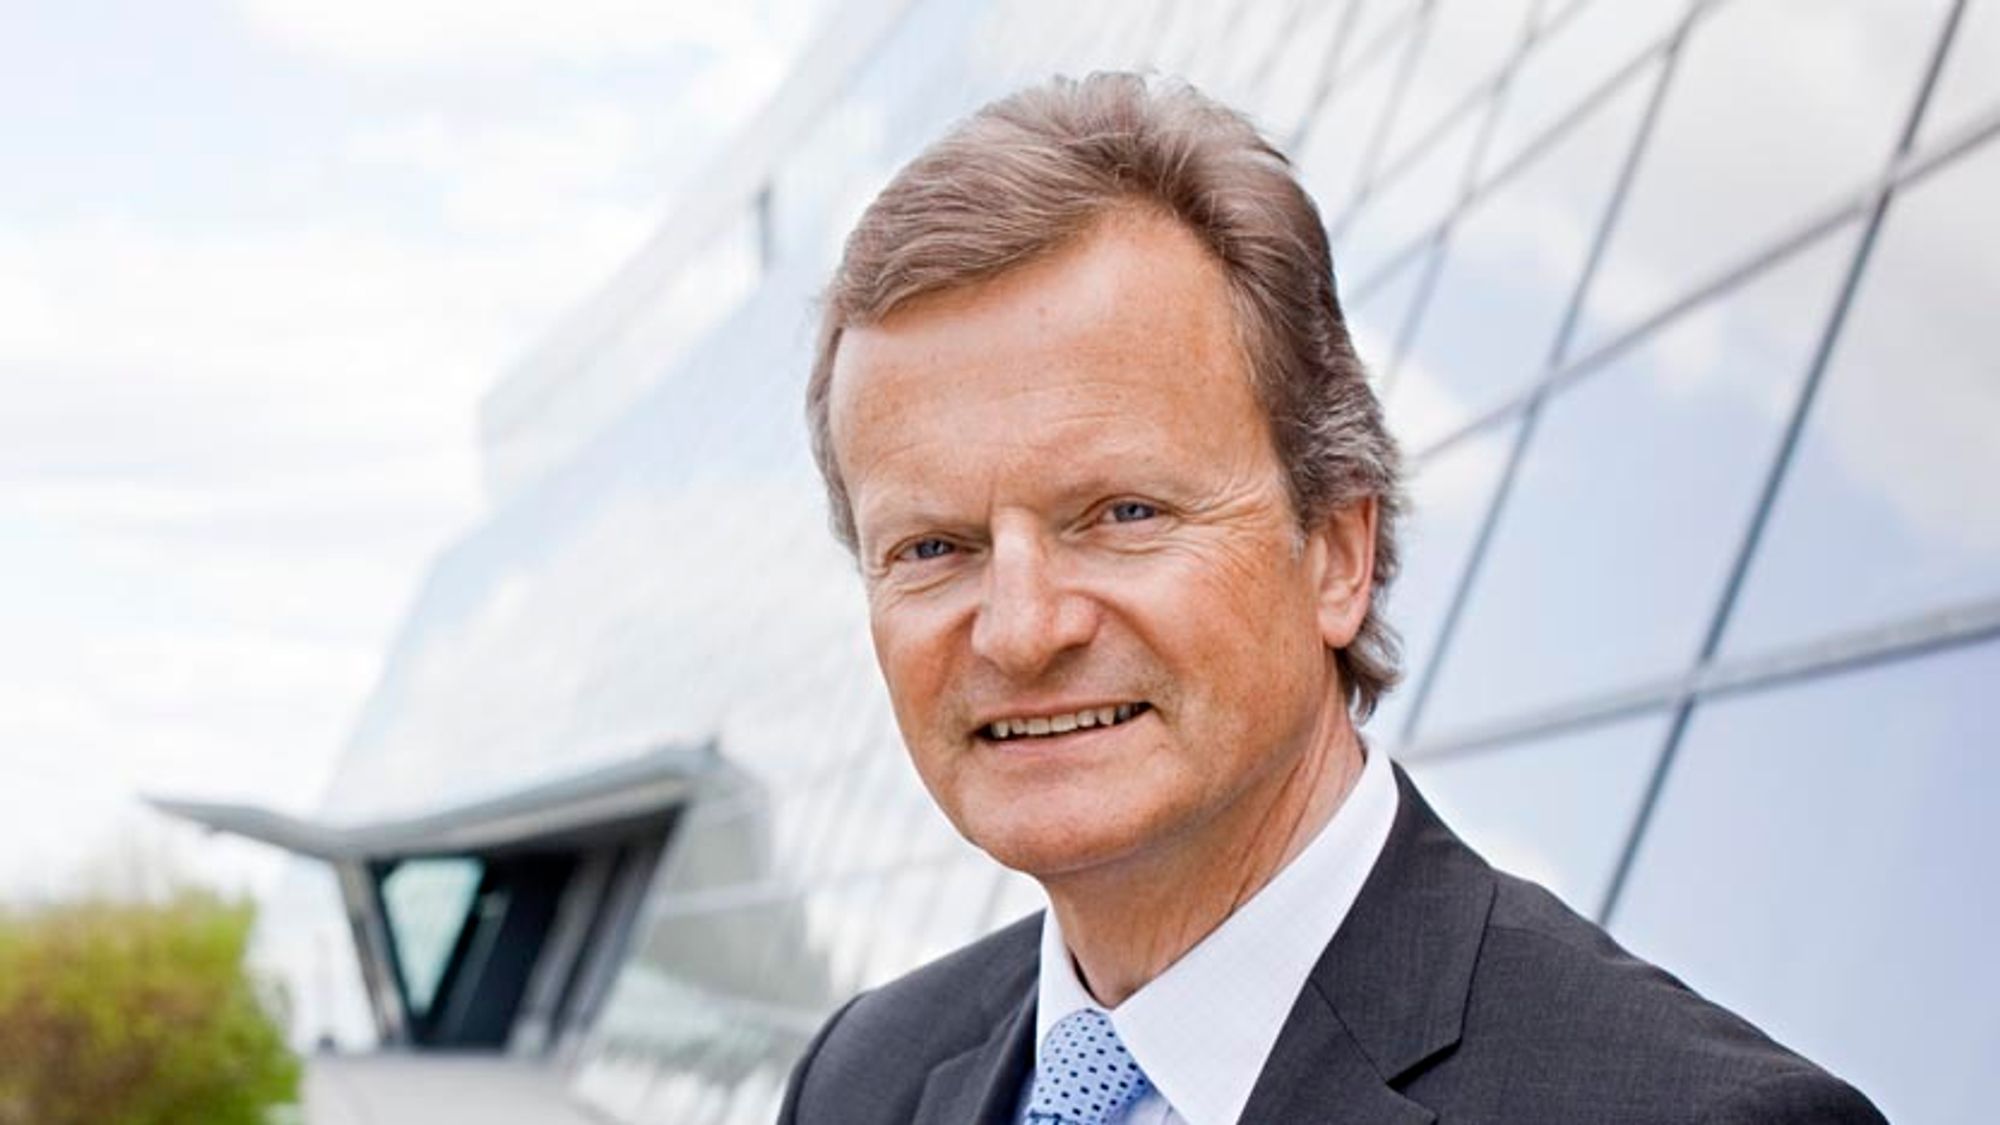 Telenorsjef Jon fredrik Baksaas fikk 20 millioner nye kunder i 2014.